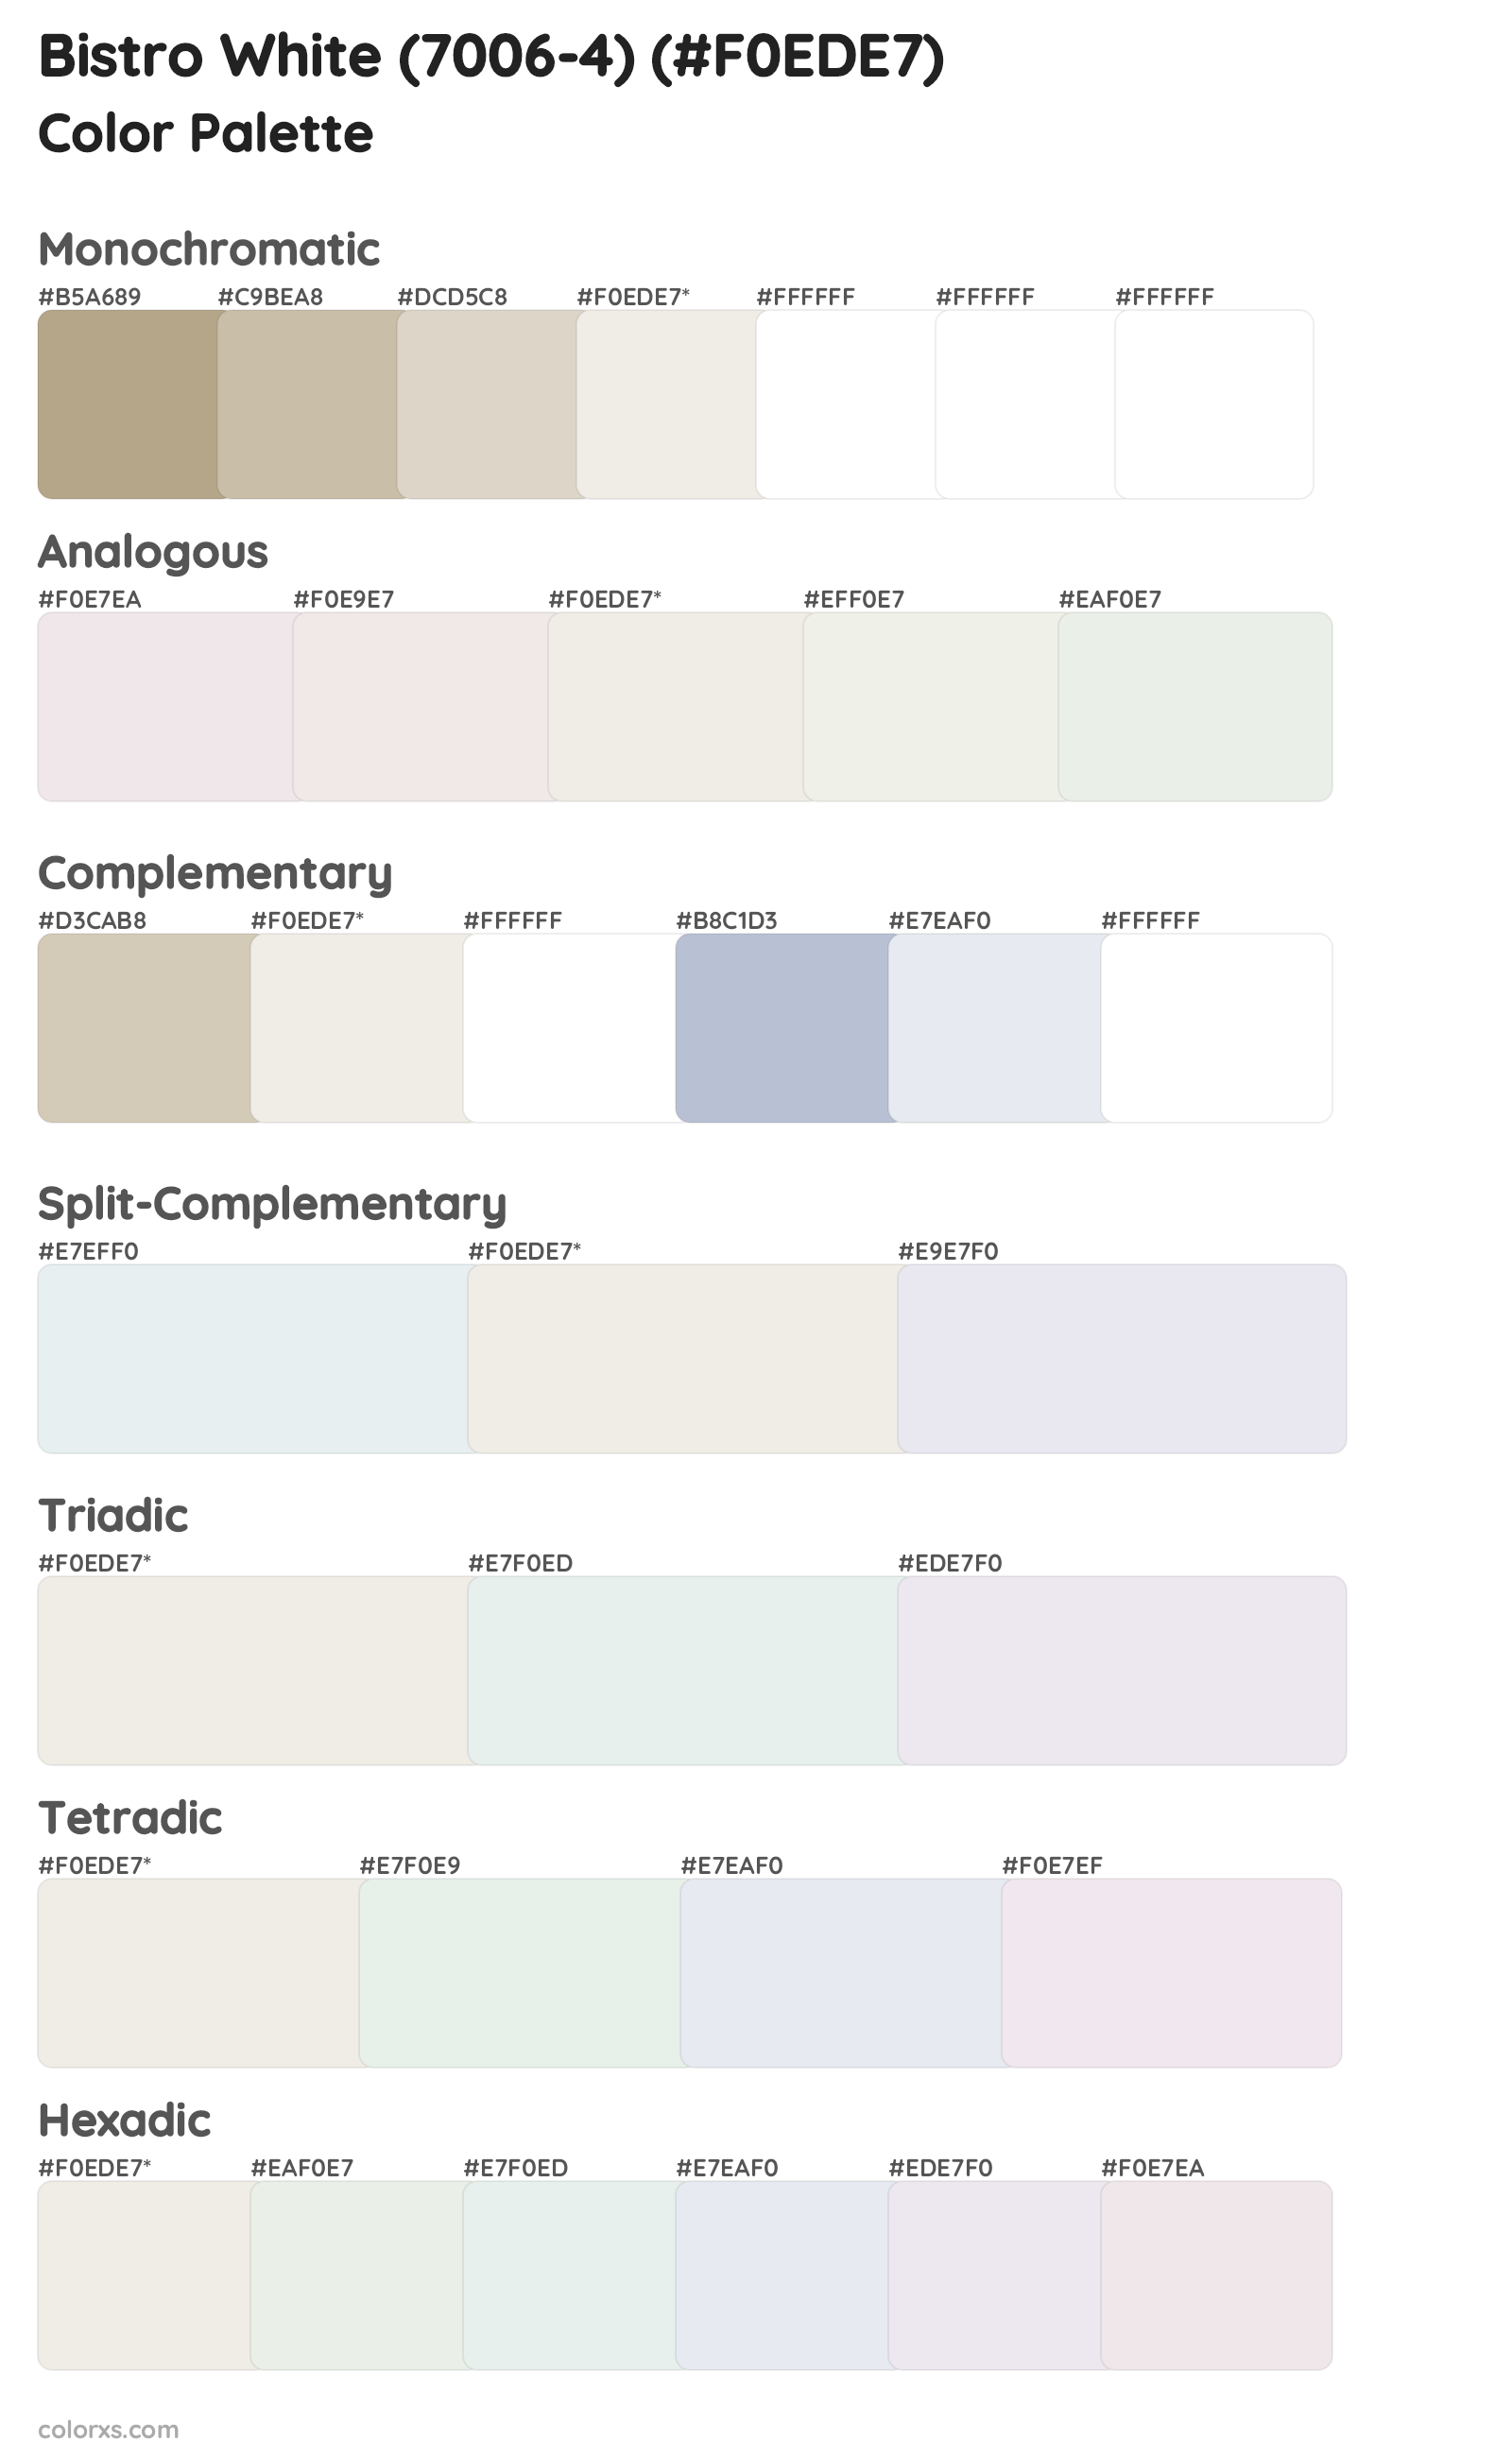 Bistro White (7006-4) Color Scheme Palettes